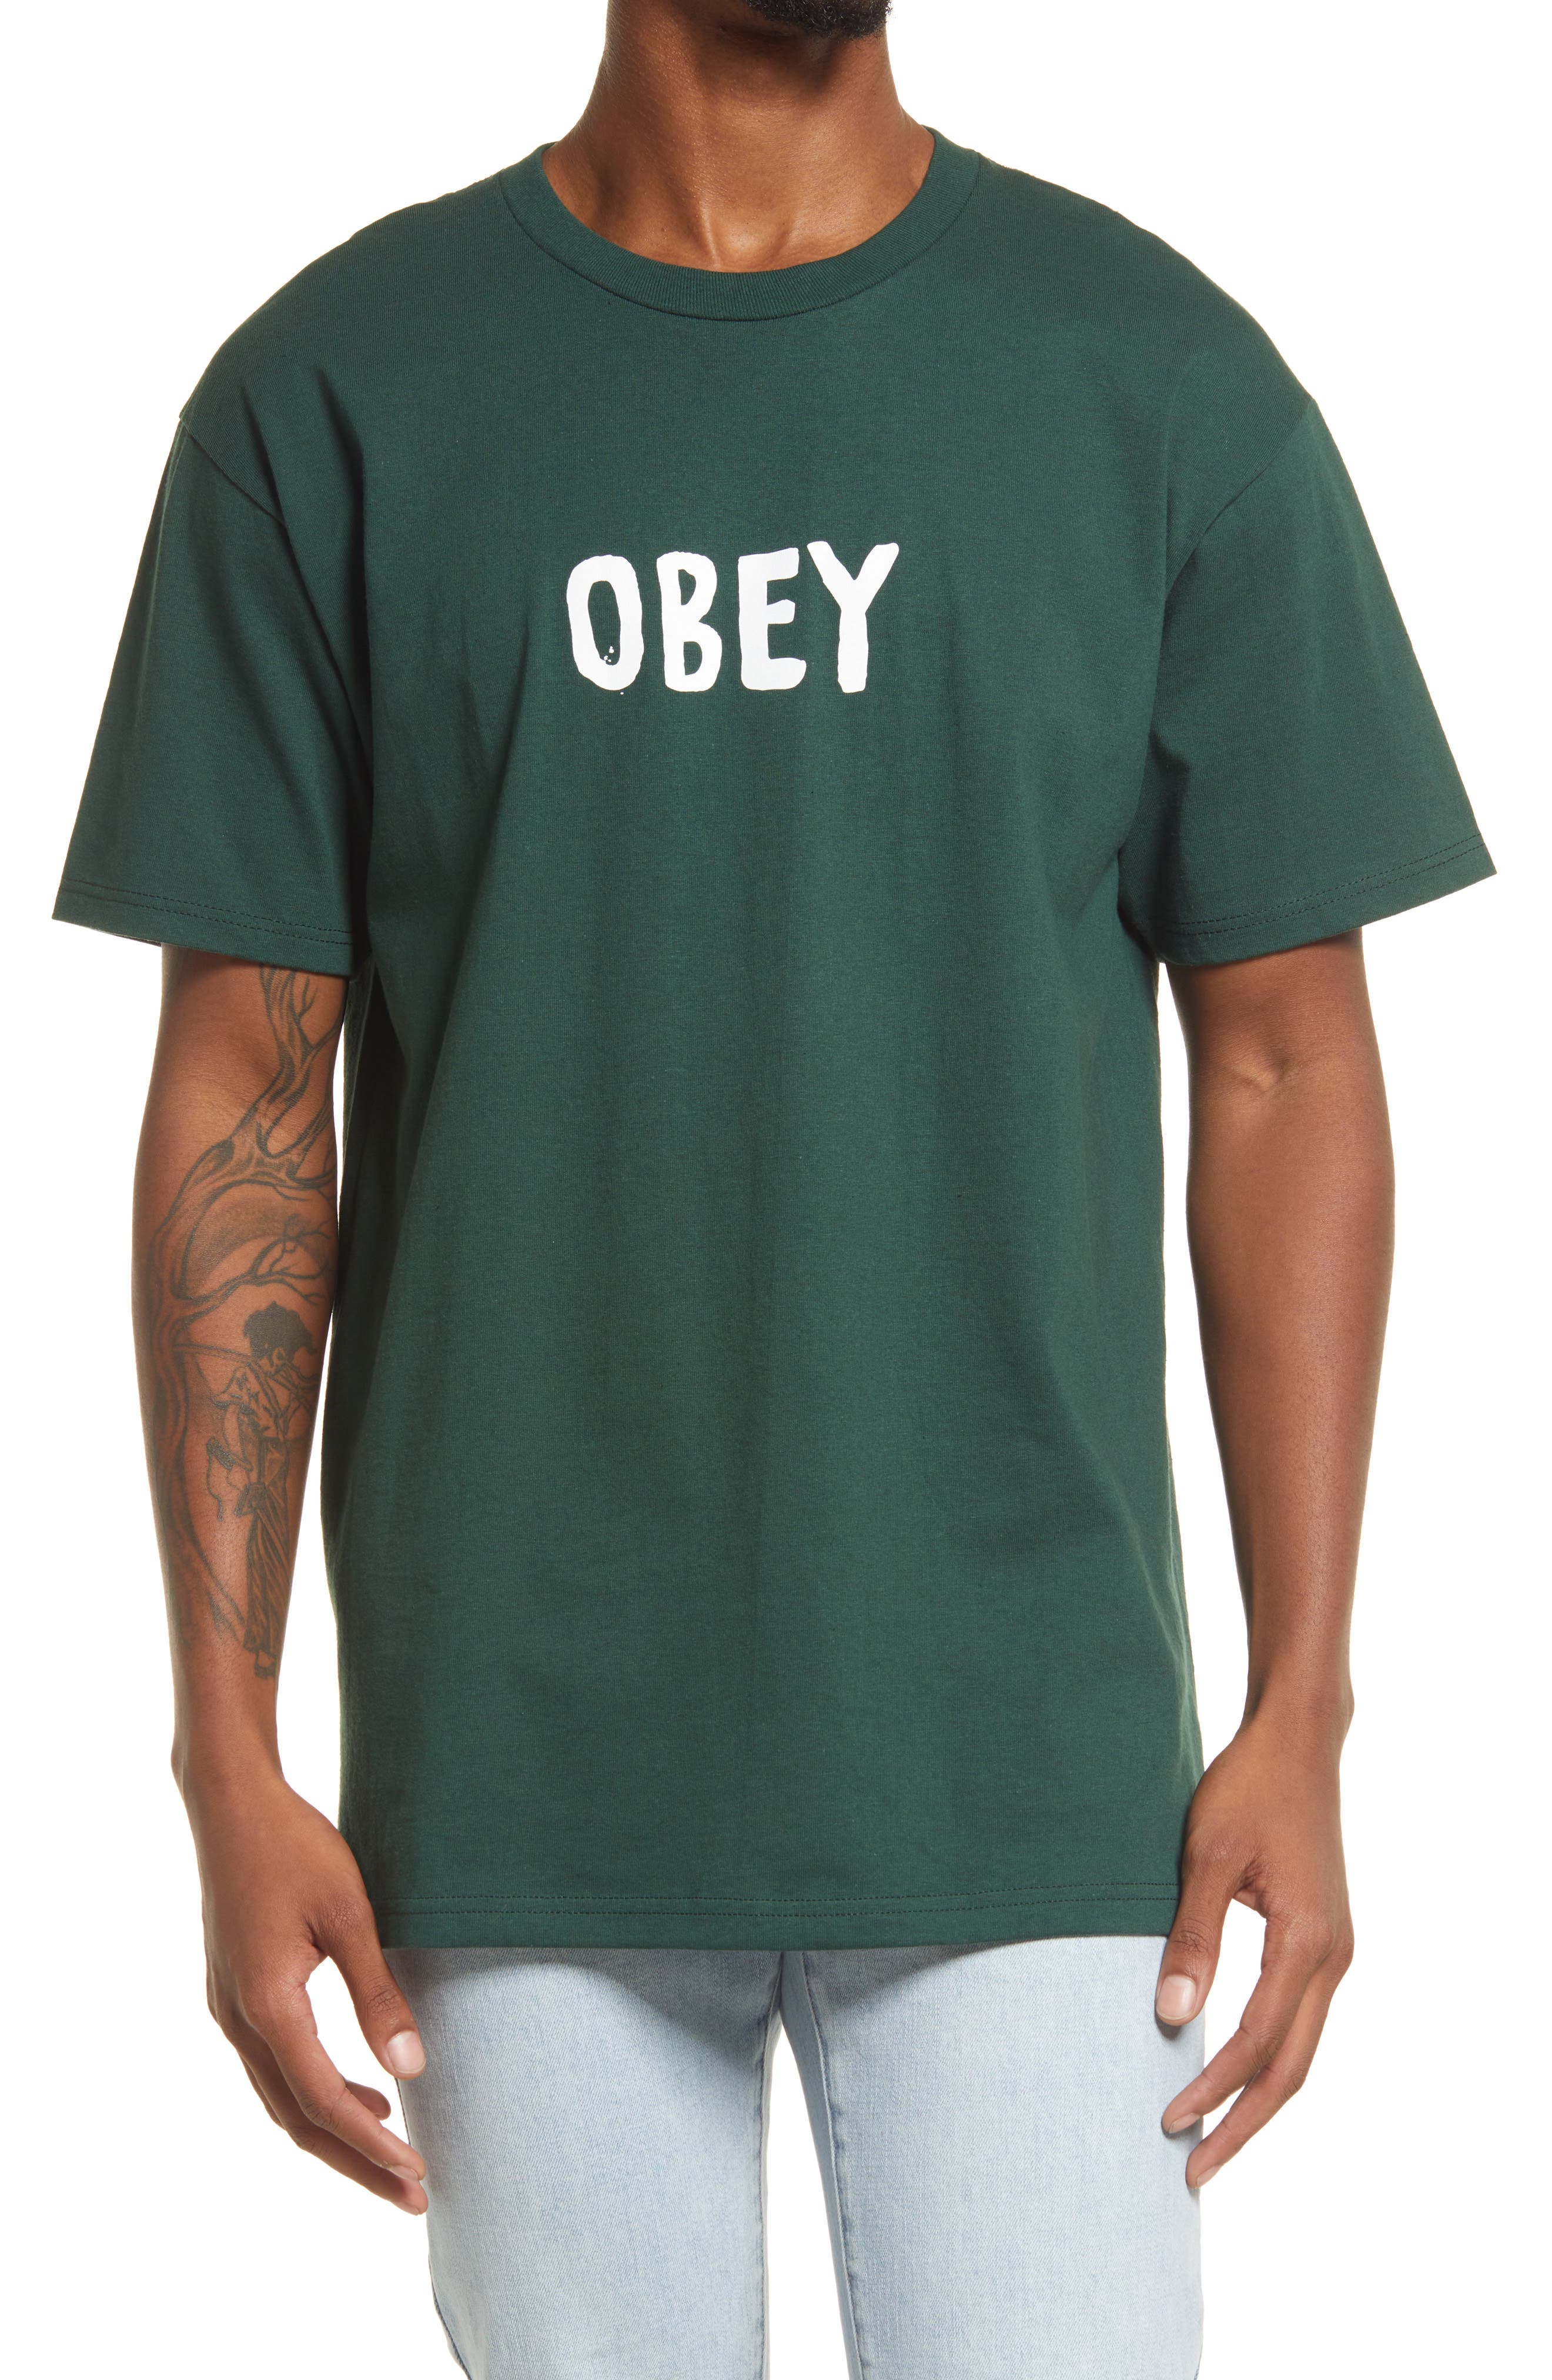 obey t shirt men